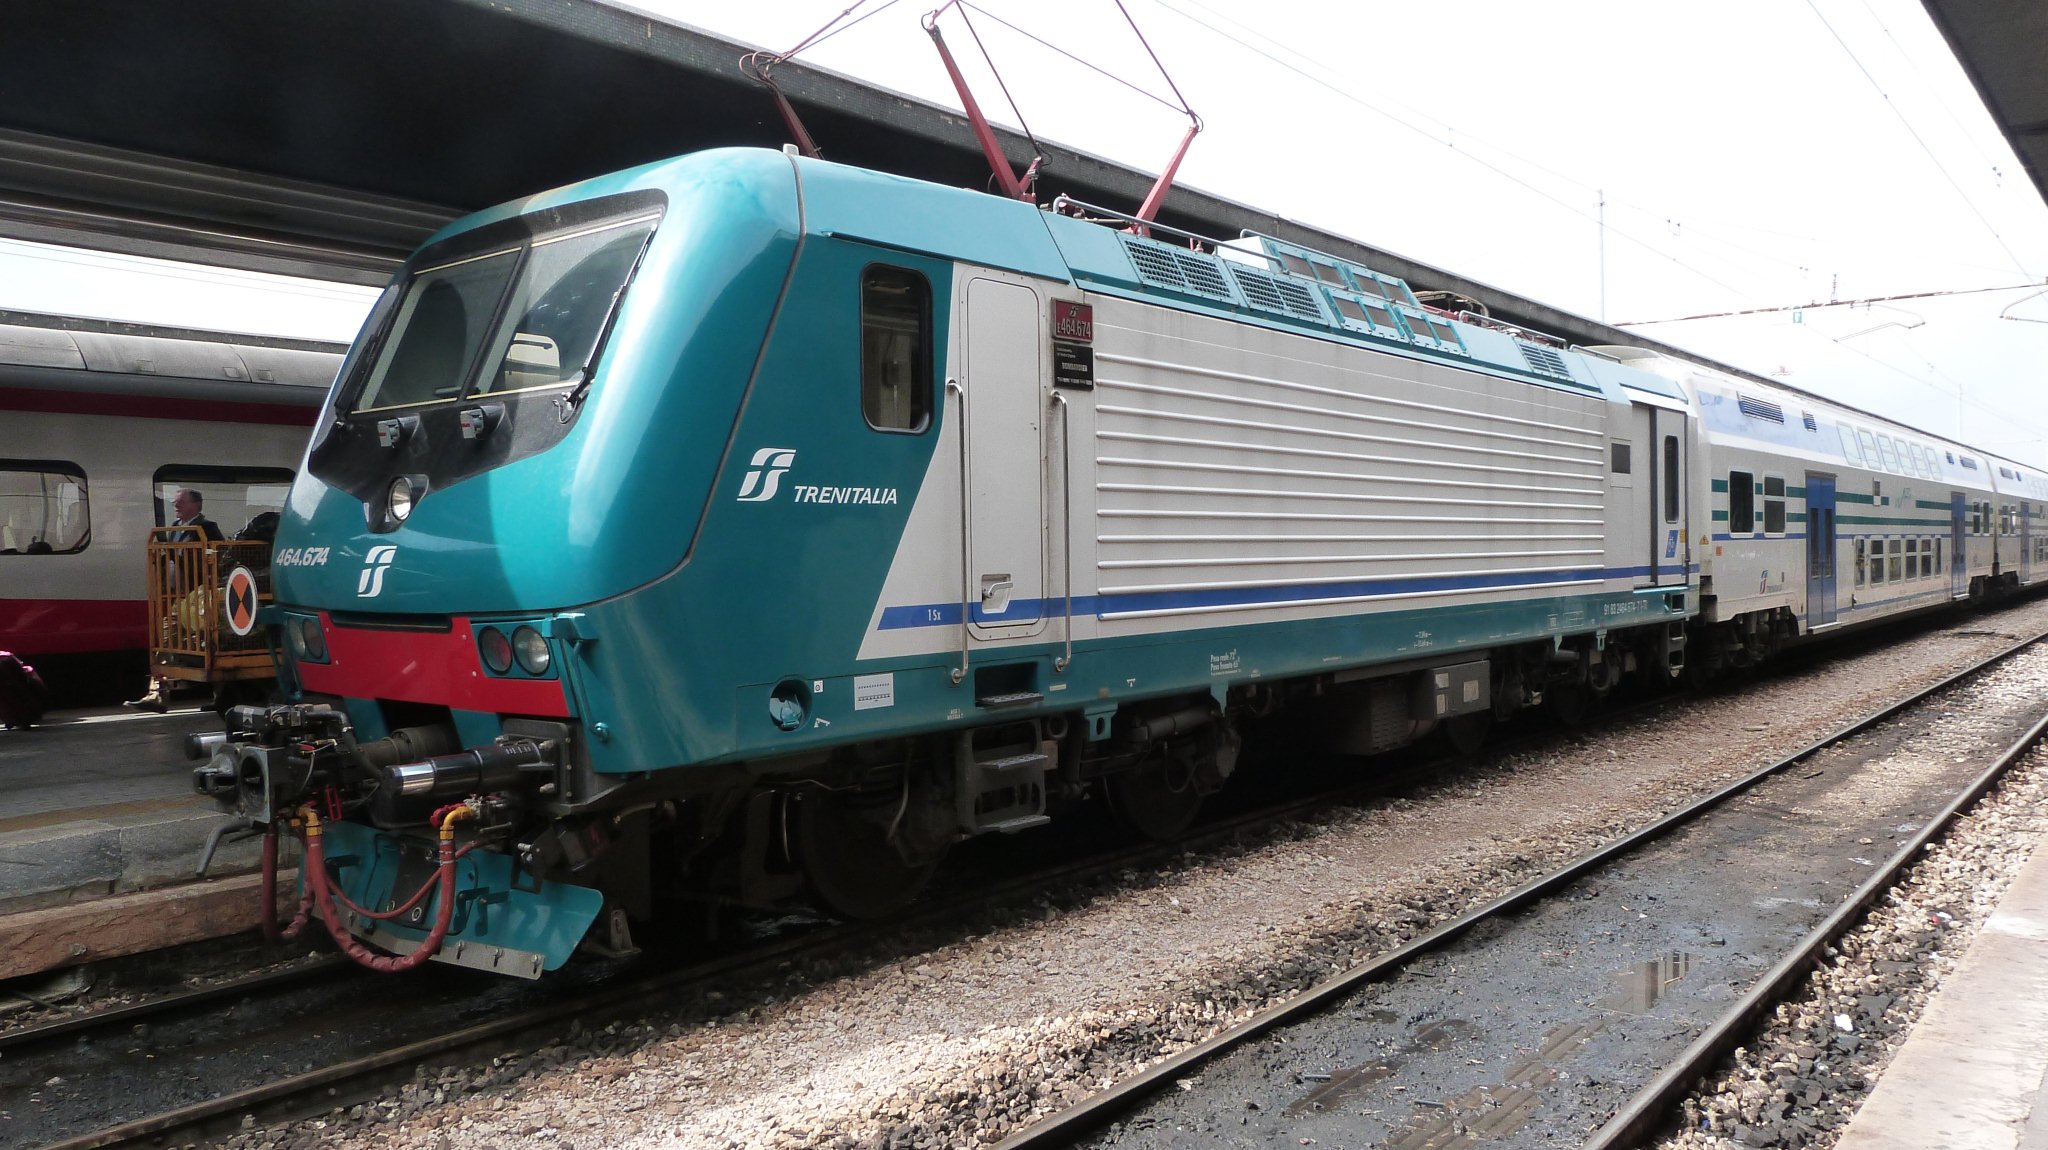 Piemonte: Covid, da lunedì 10 gennaio variazioni nel servizio ferroviario